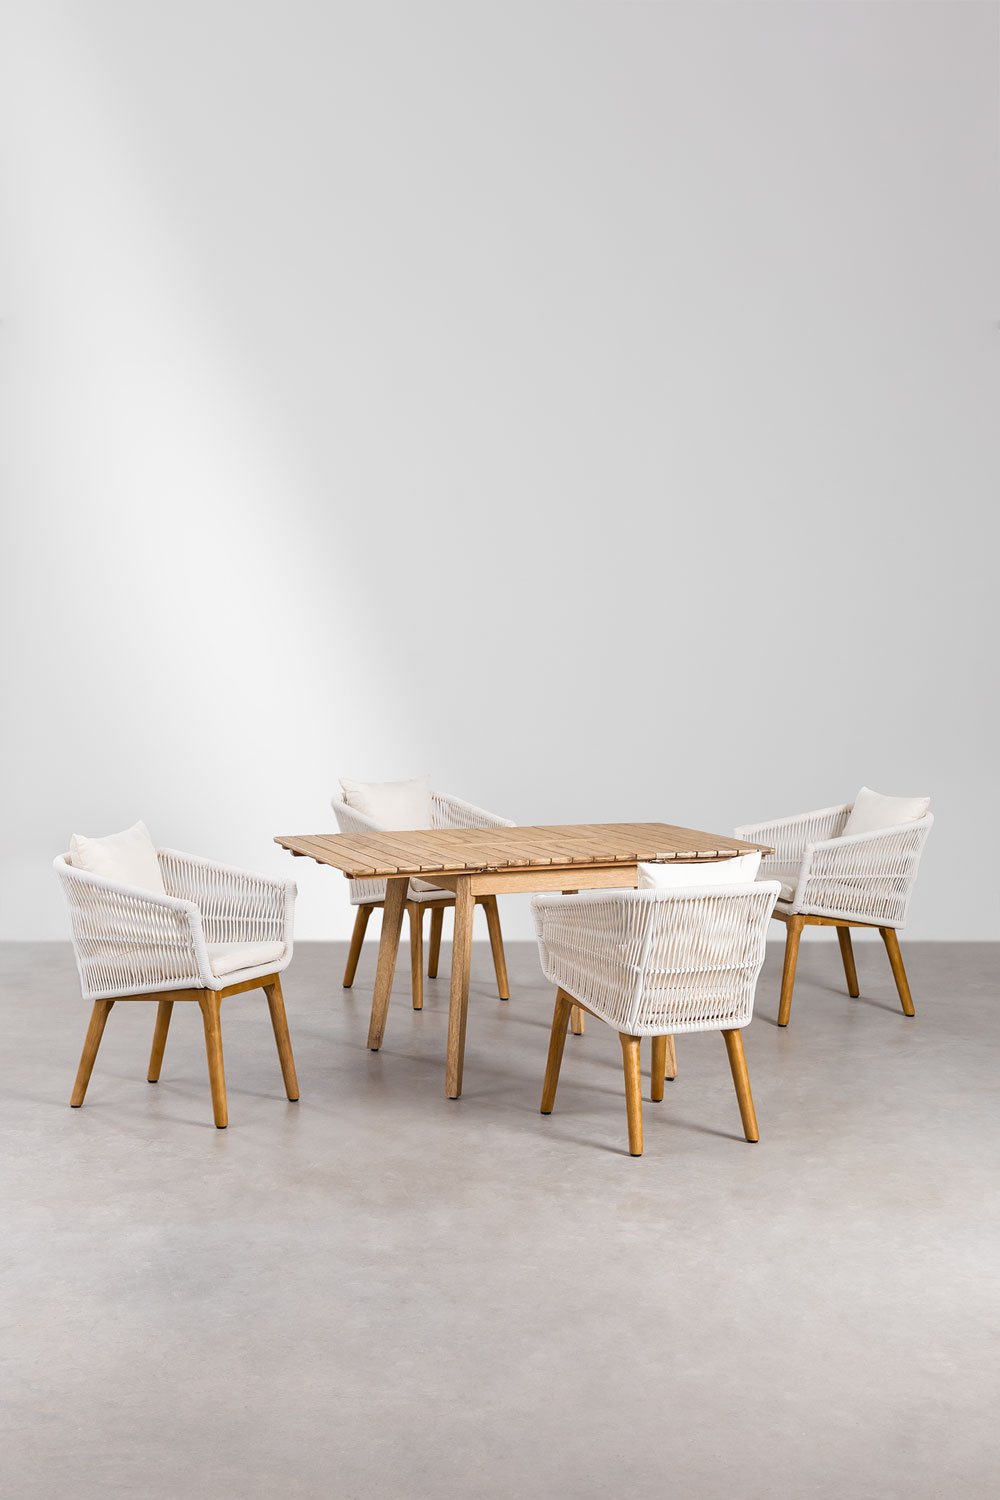 Houten uitschuifbare tafelset (90-150x90 cm) Naele en 4 Barker tuinstoelen, galerij beeld 1